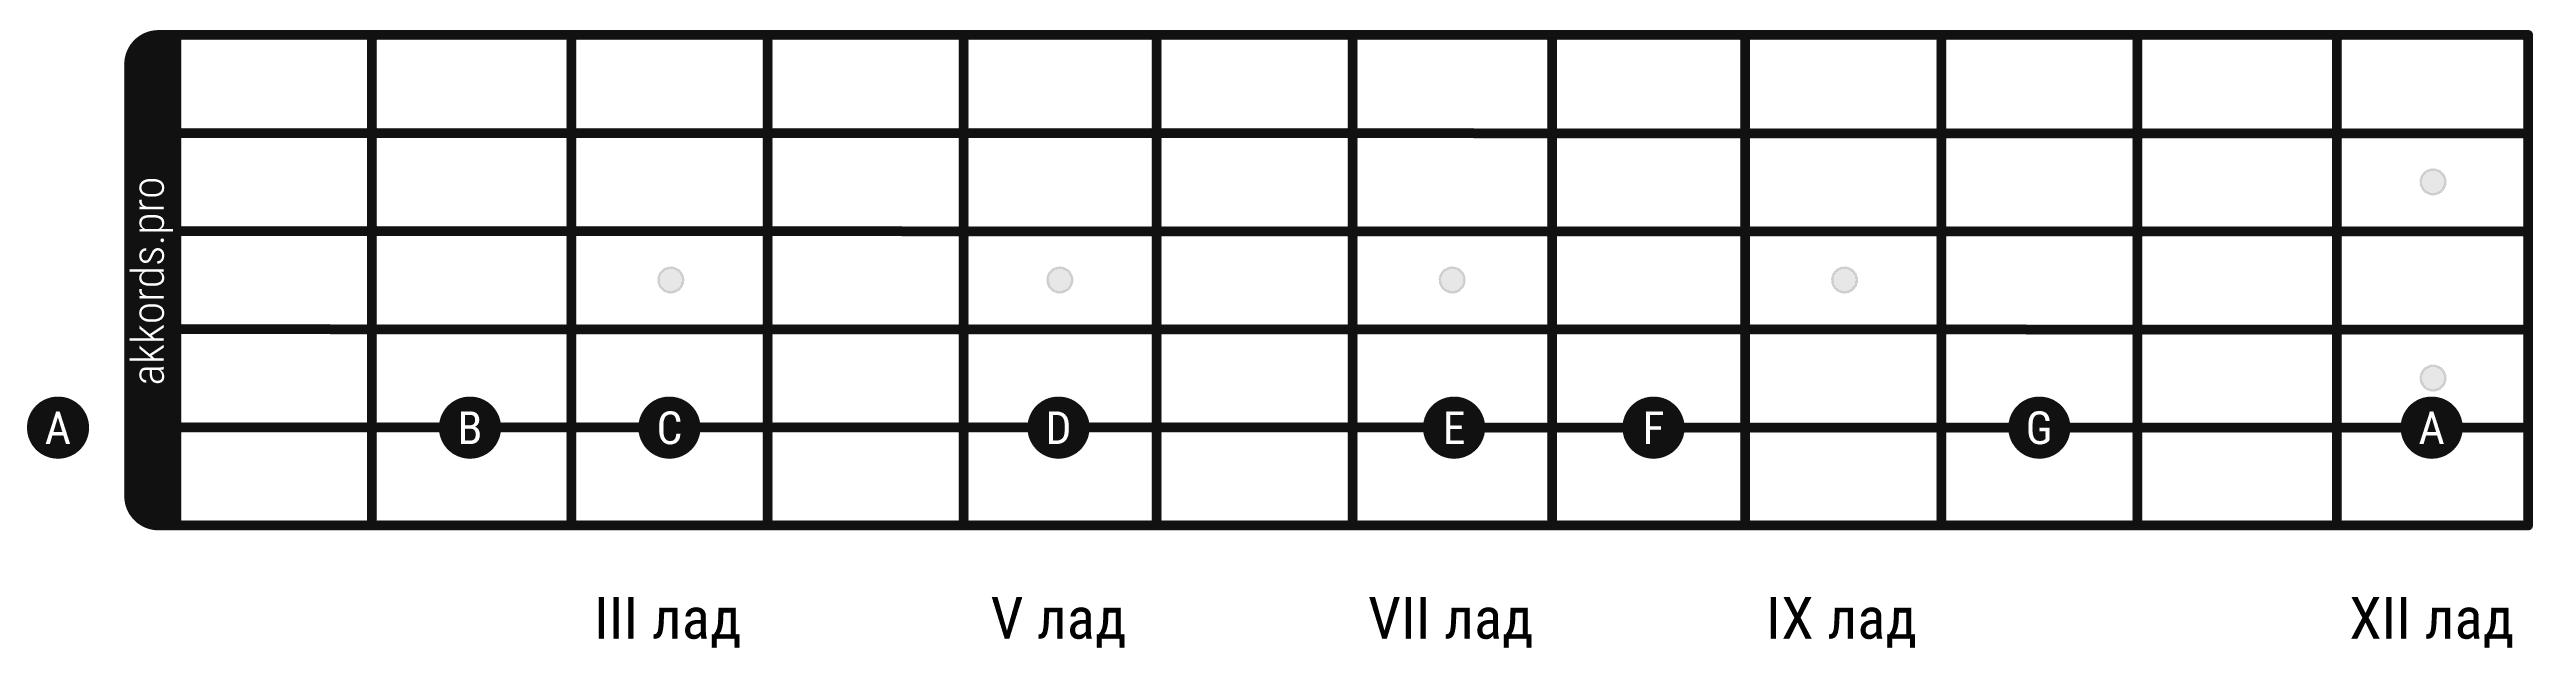 Ноты на грифе гитары: расположение нот на 5 струне